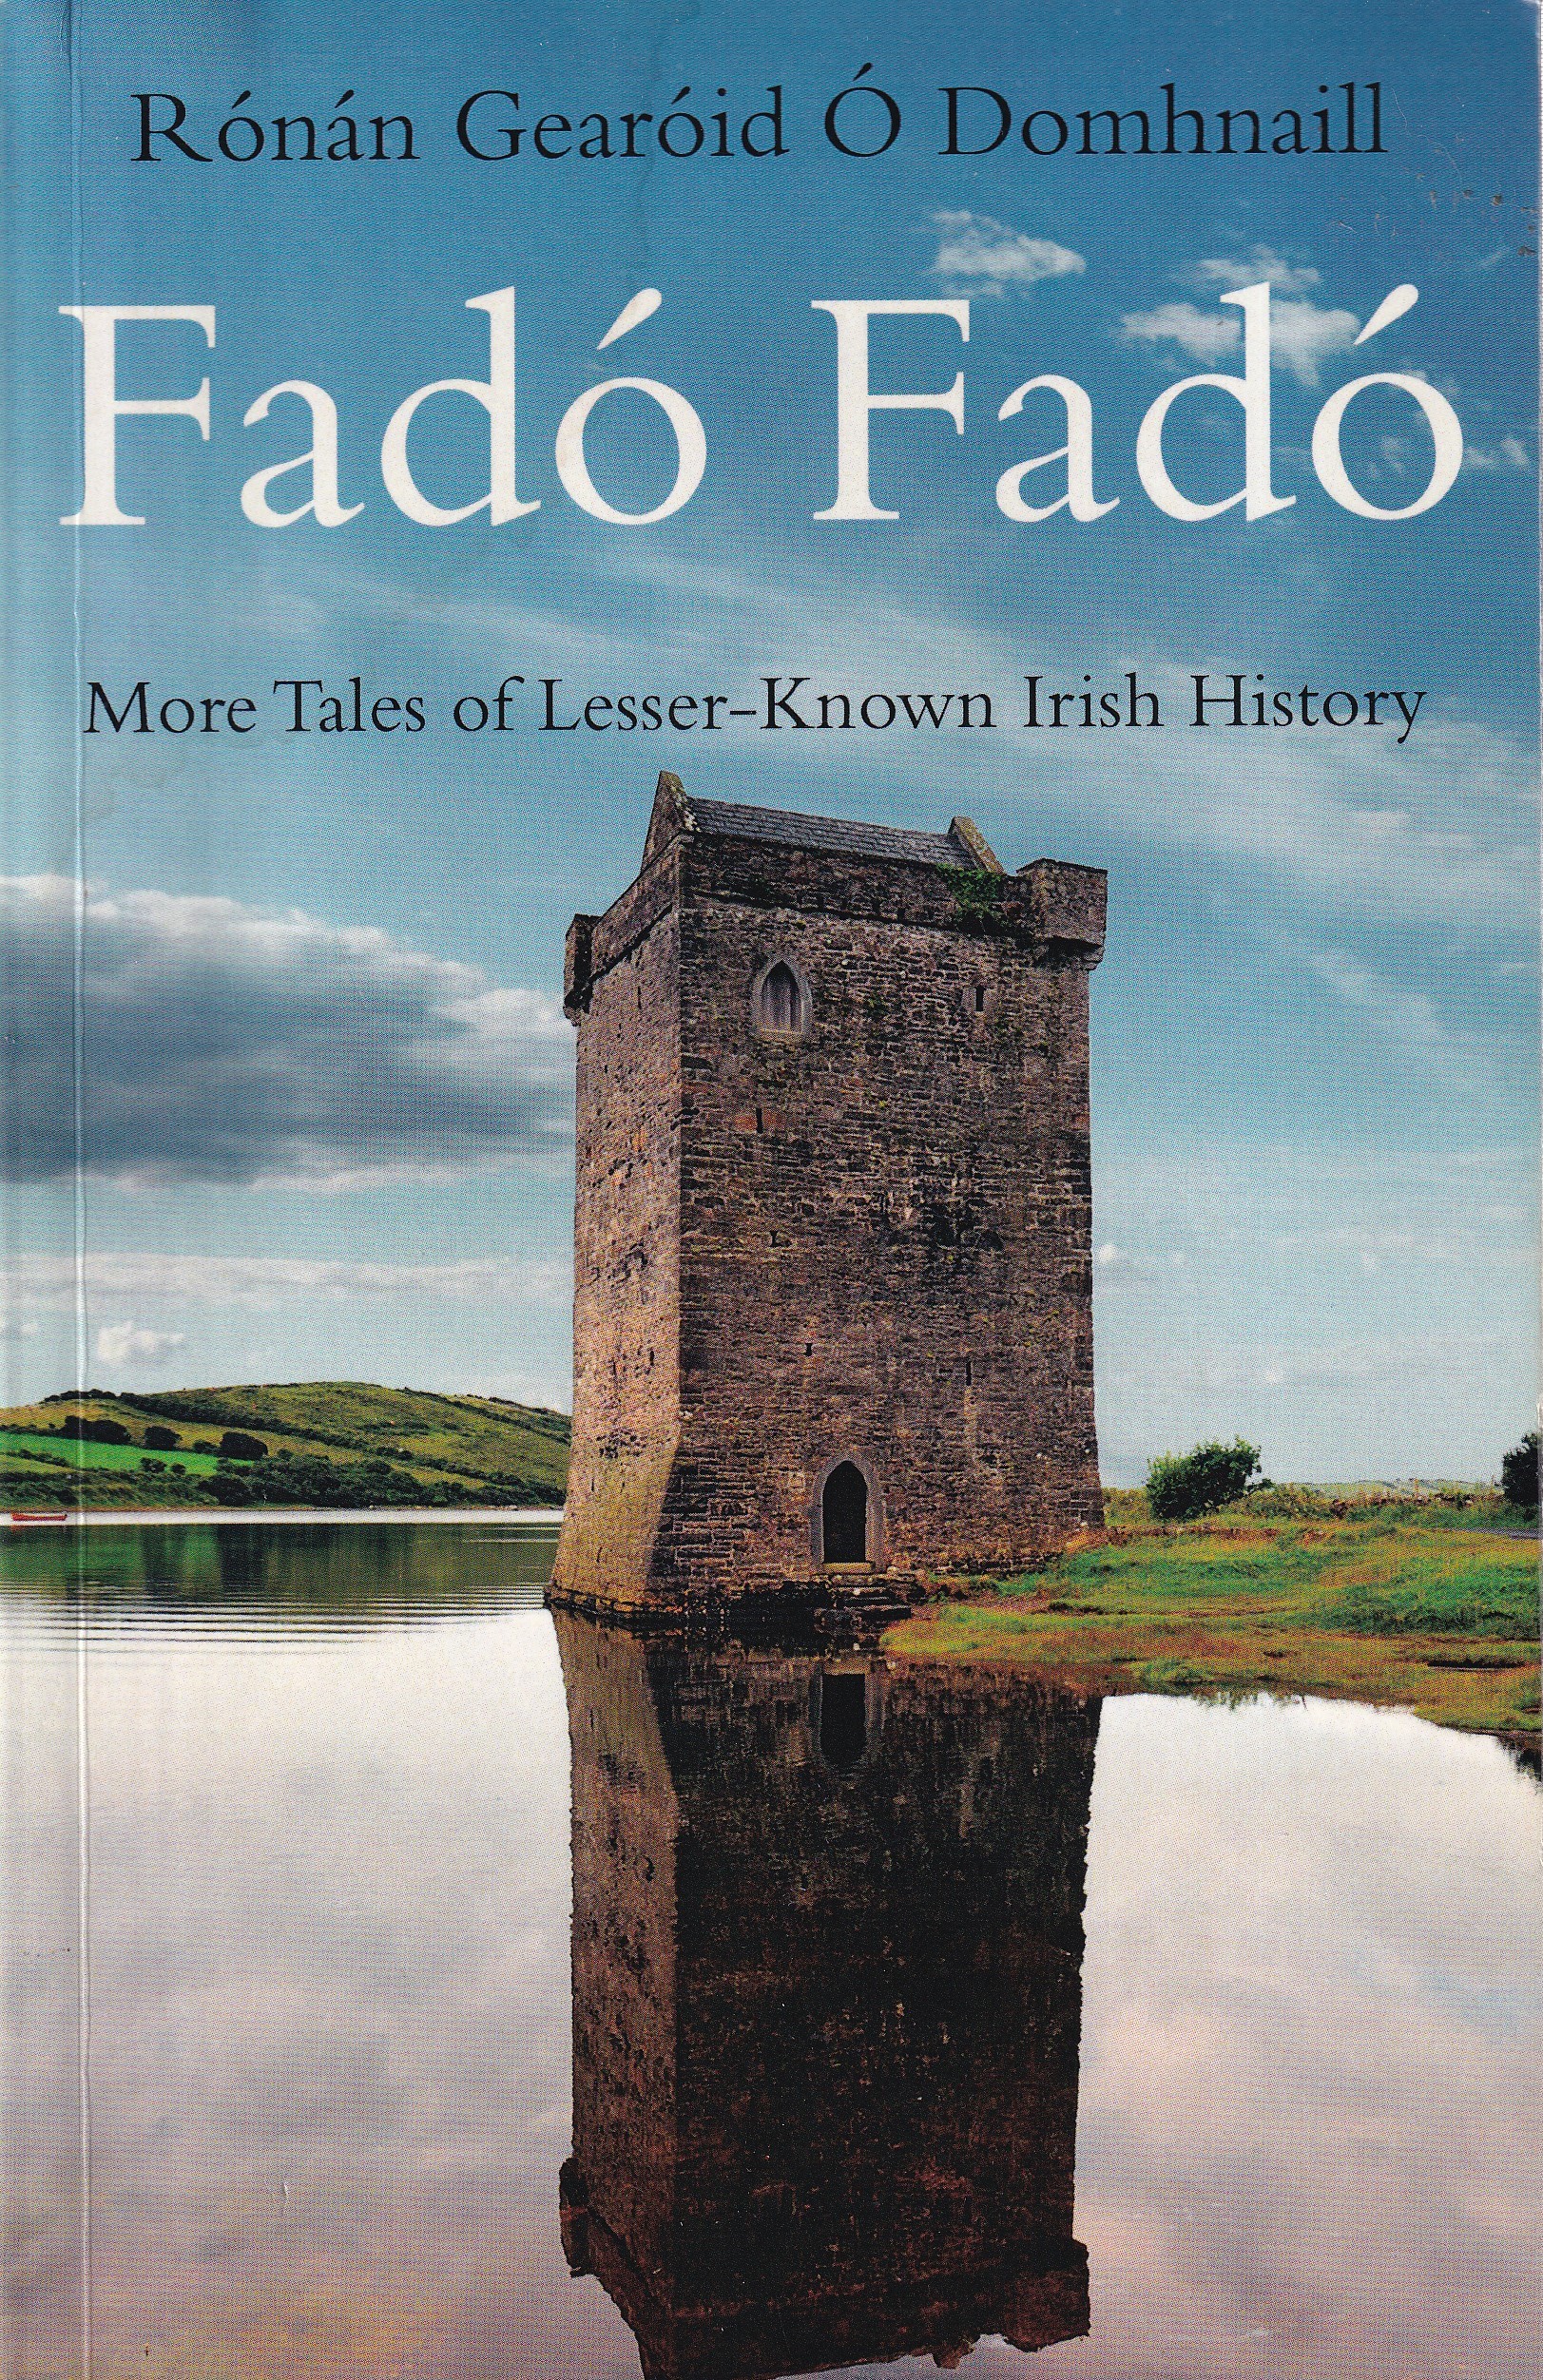 Fadó Fadó: More Tales of Lesser-Known Irish History by Rónán Gearóid Ó Domhnaill